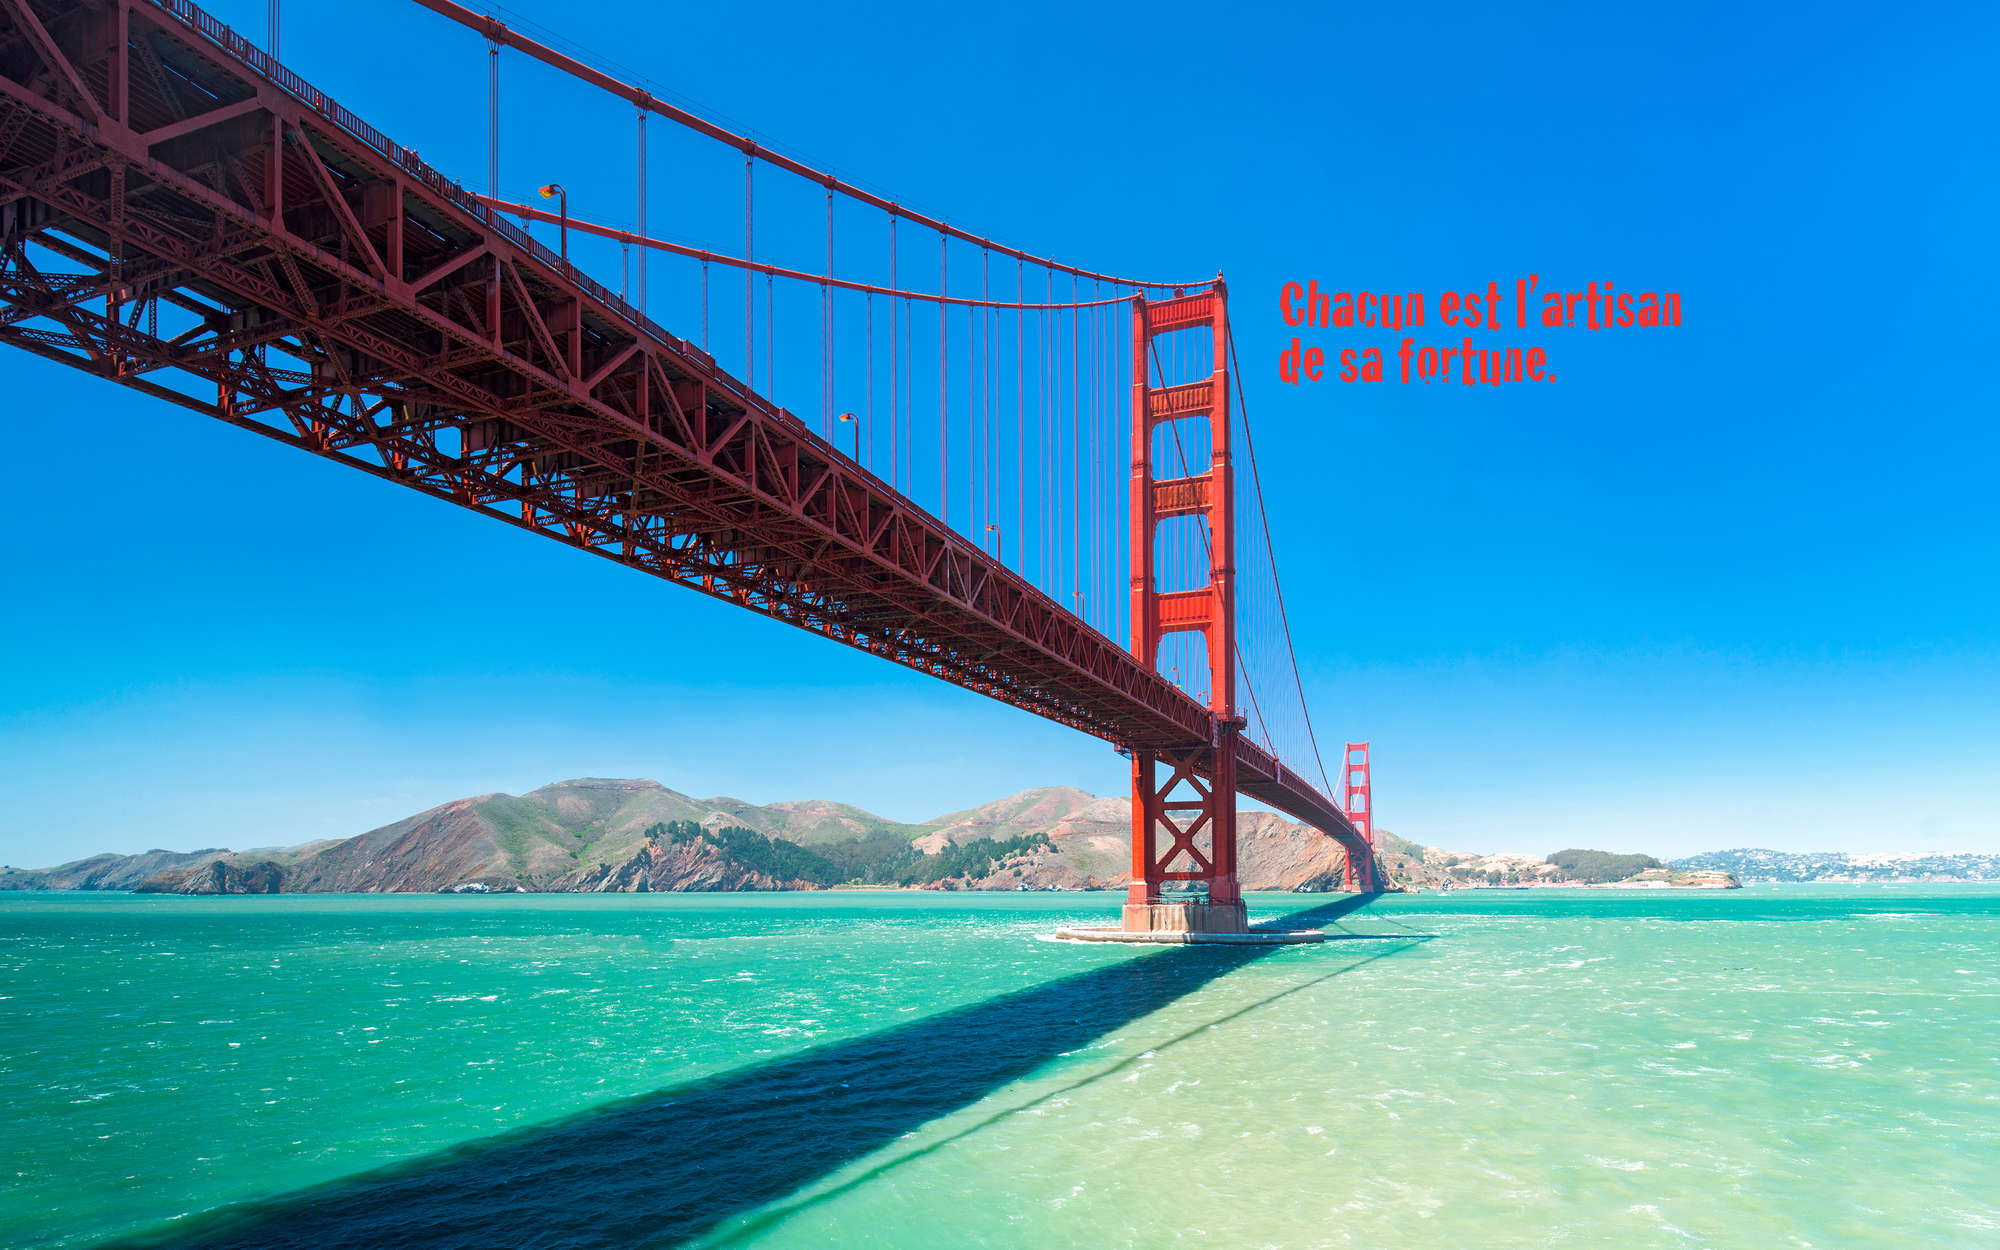             Fototapete Golden Gate Bridge mit Schriftzug auf französisch – Perlmutt Glattvlies
        